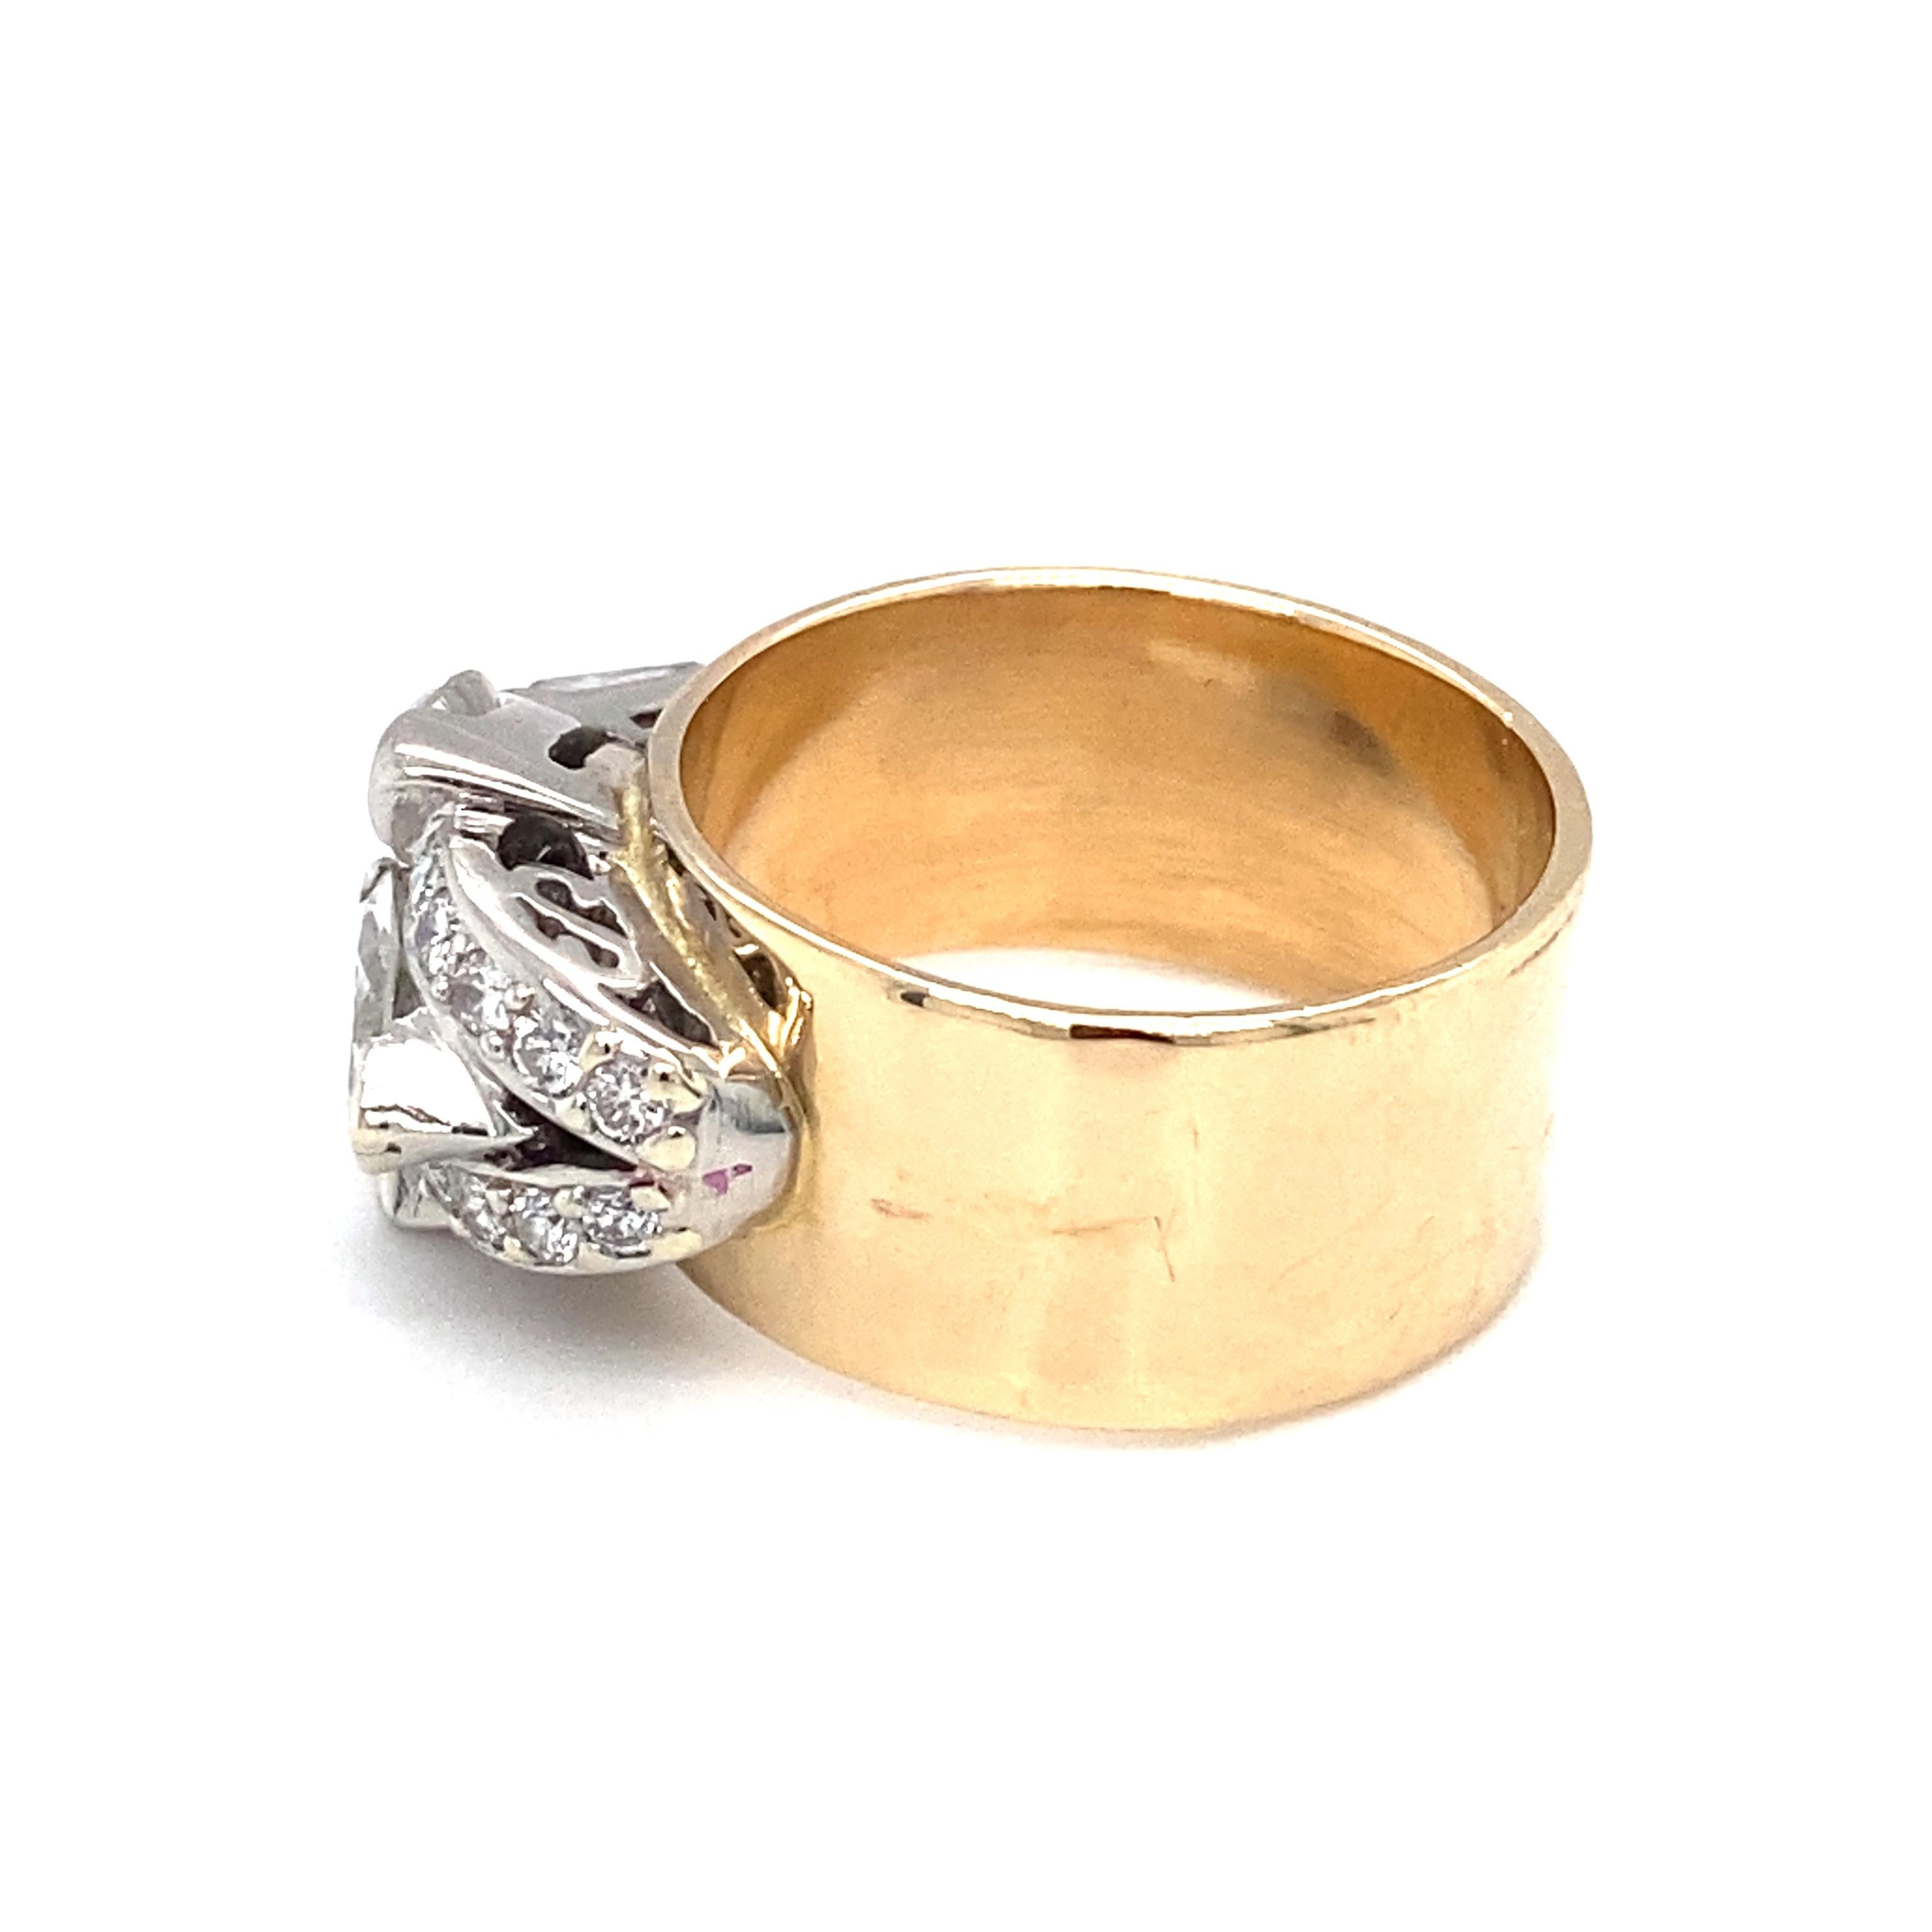 Women's or Men's Circa 1920s 2.32 Carat Diamond Ring in 14 Karat Two Tone Gold